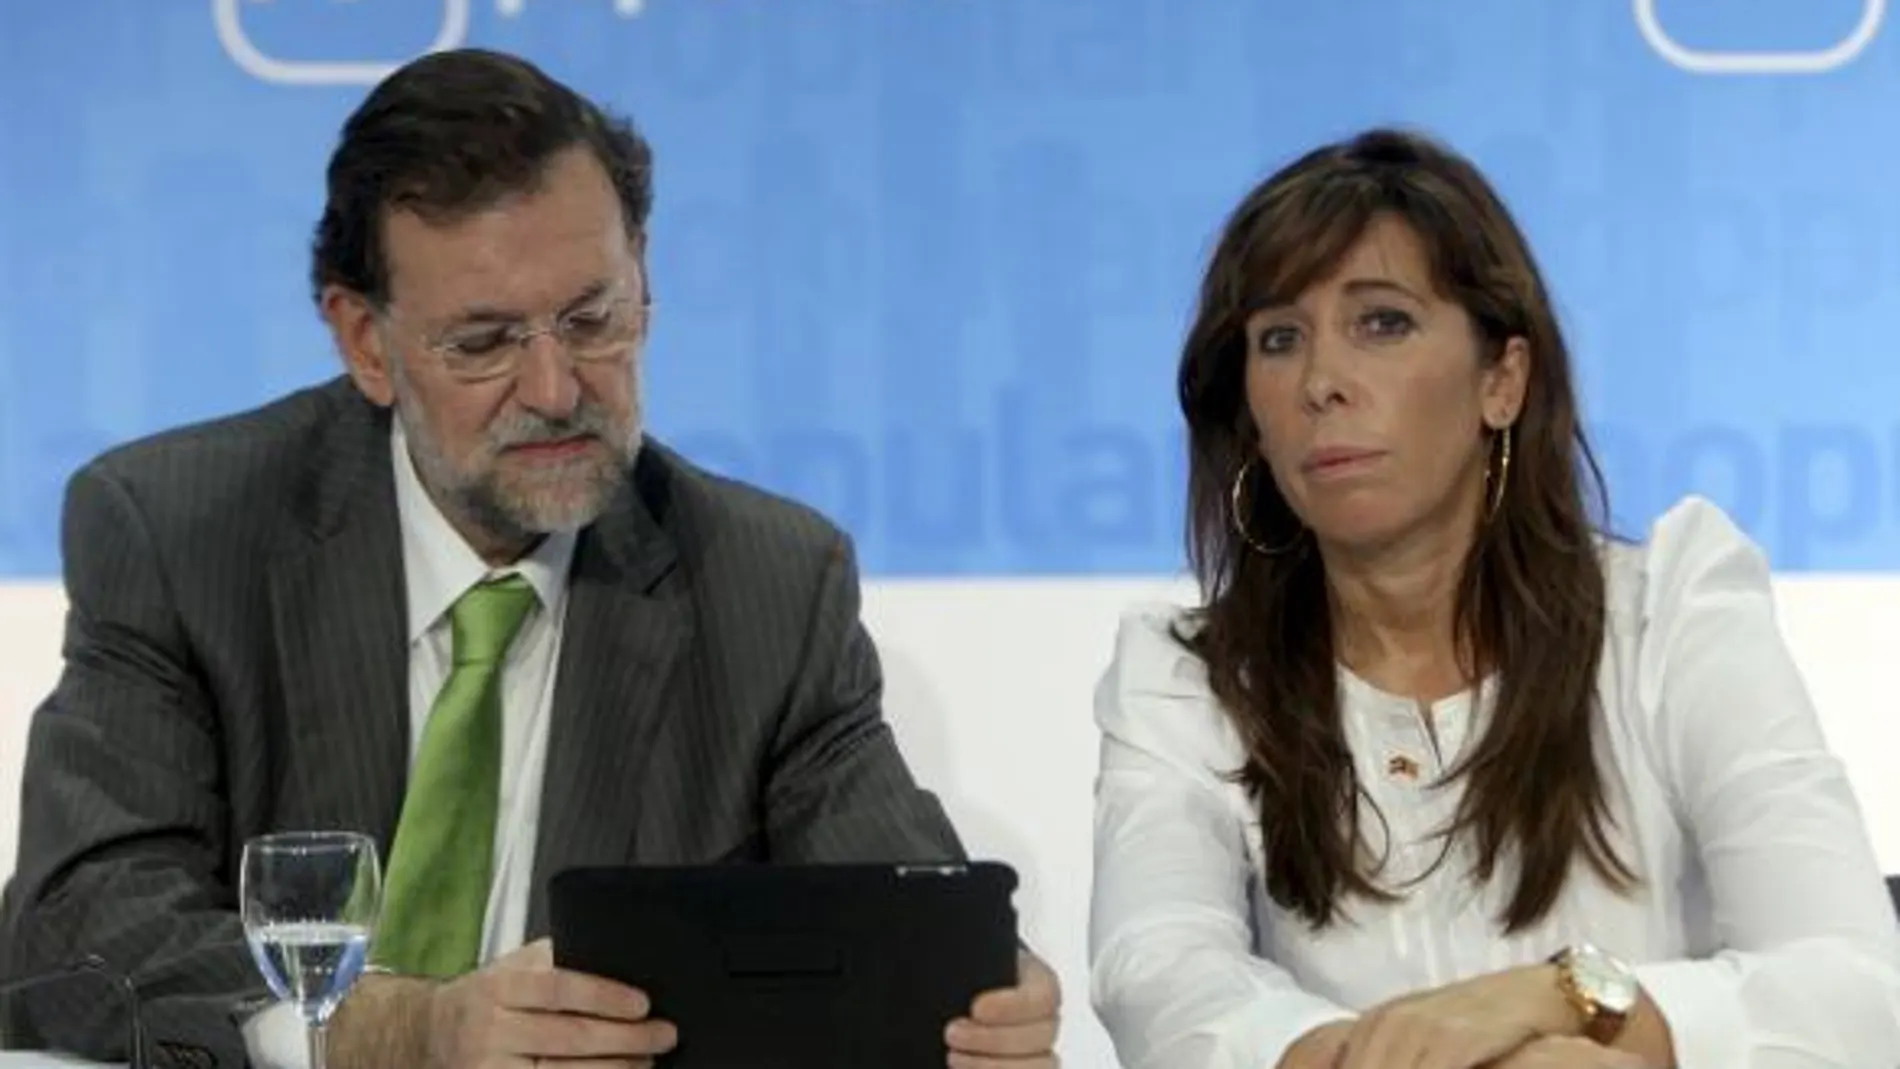 Mariano Rajoy, acompañado de la presidenta en Cataluña, Alicia Sánchez Camacho, durante la reunión que mantienen hoy la ejecutiva nacional en un hotel de Barcelona